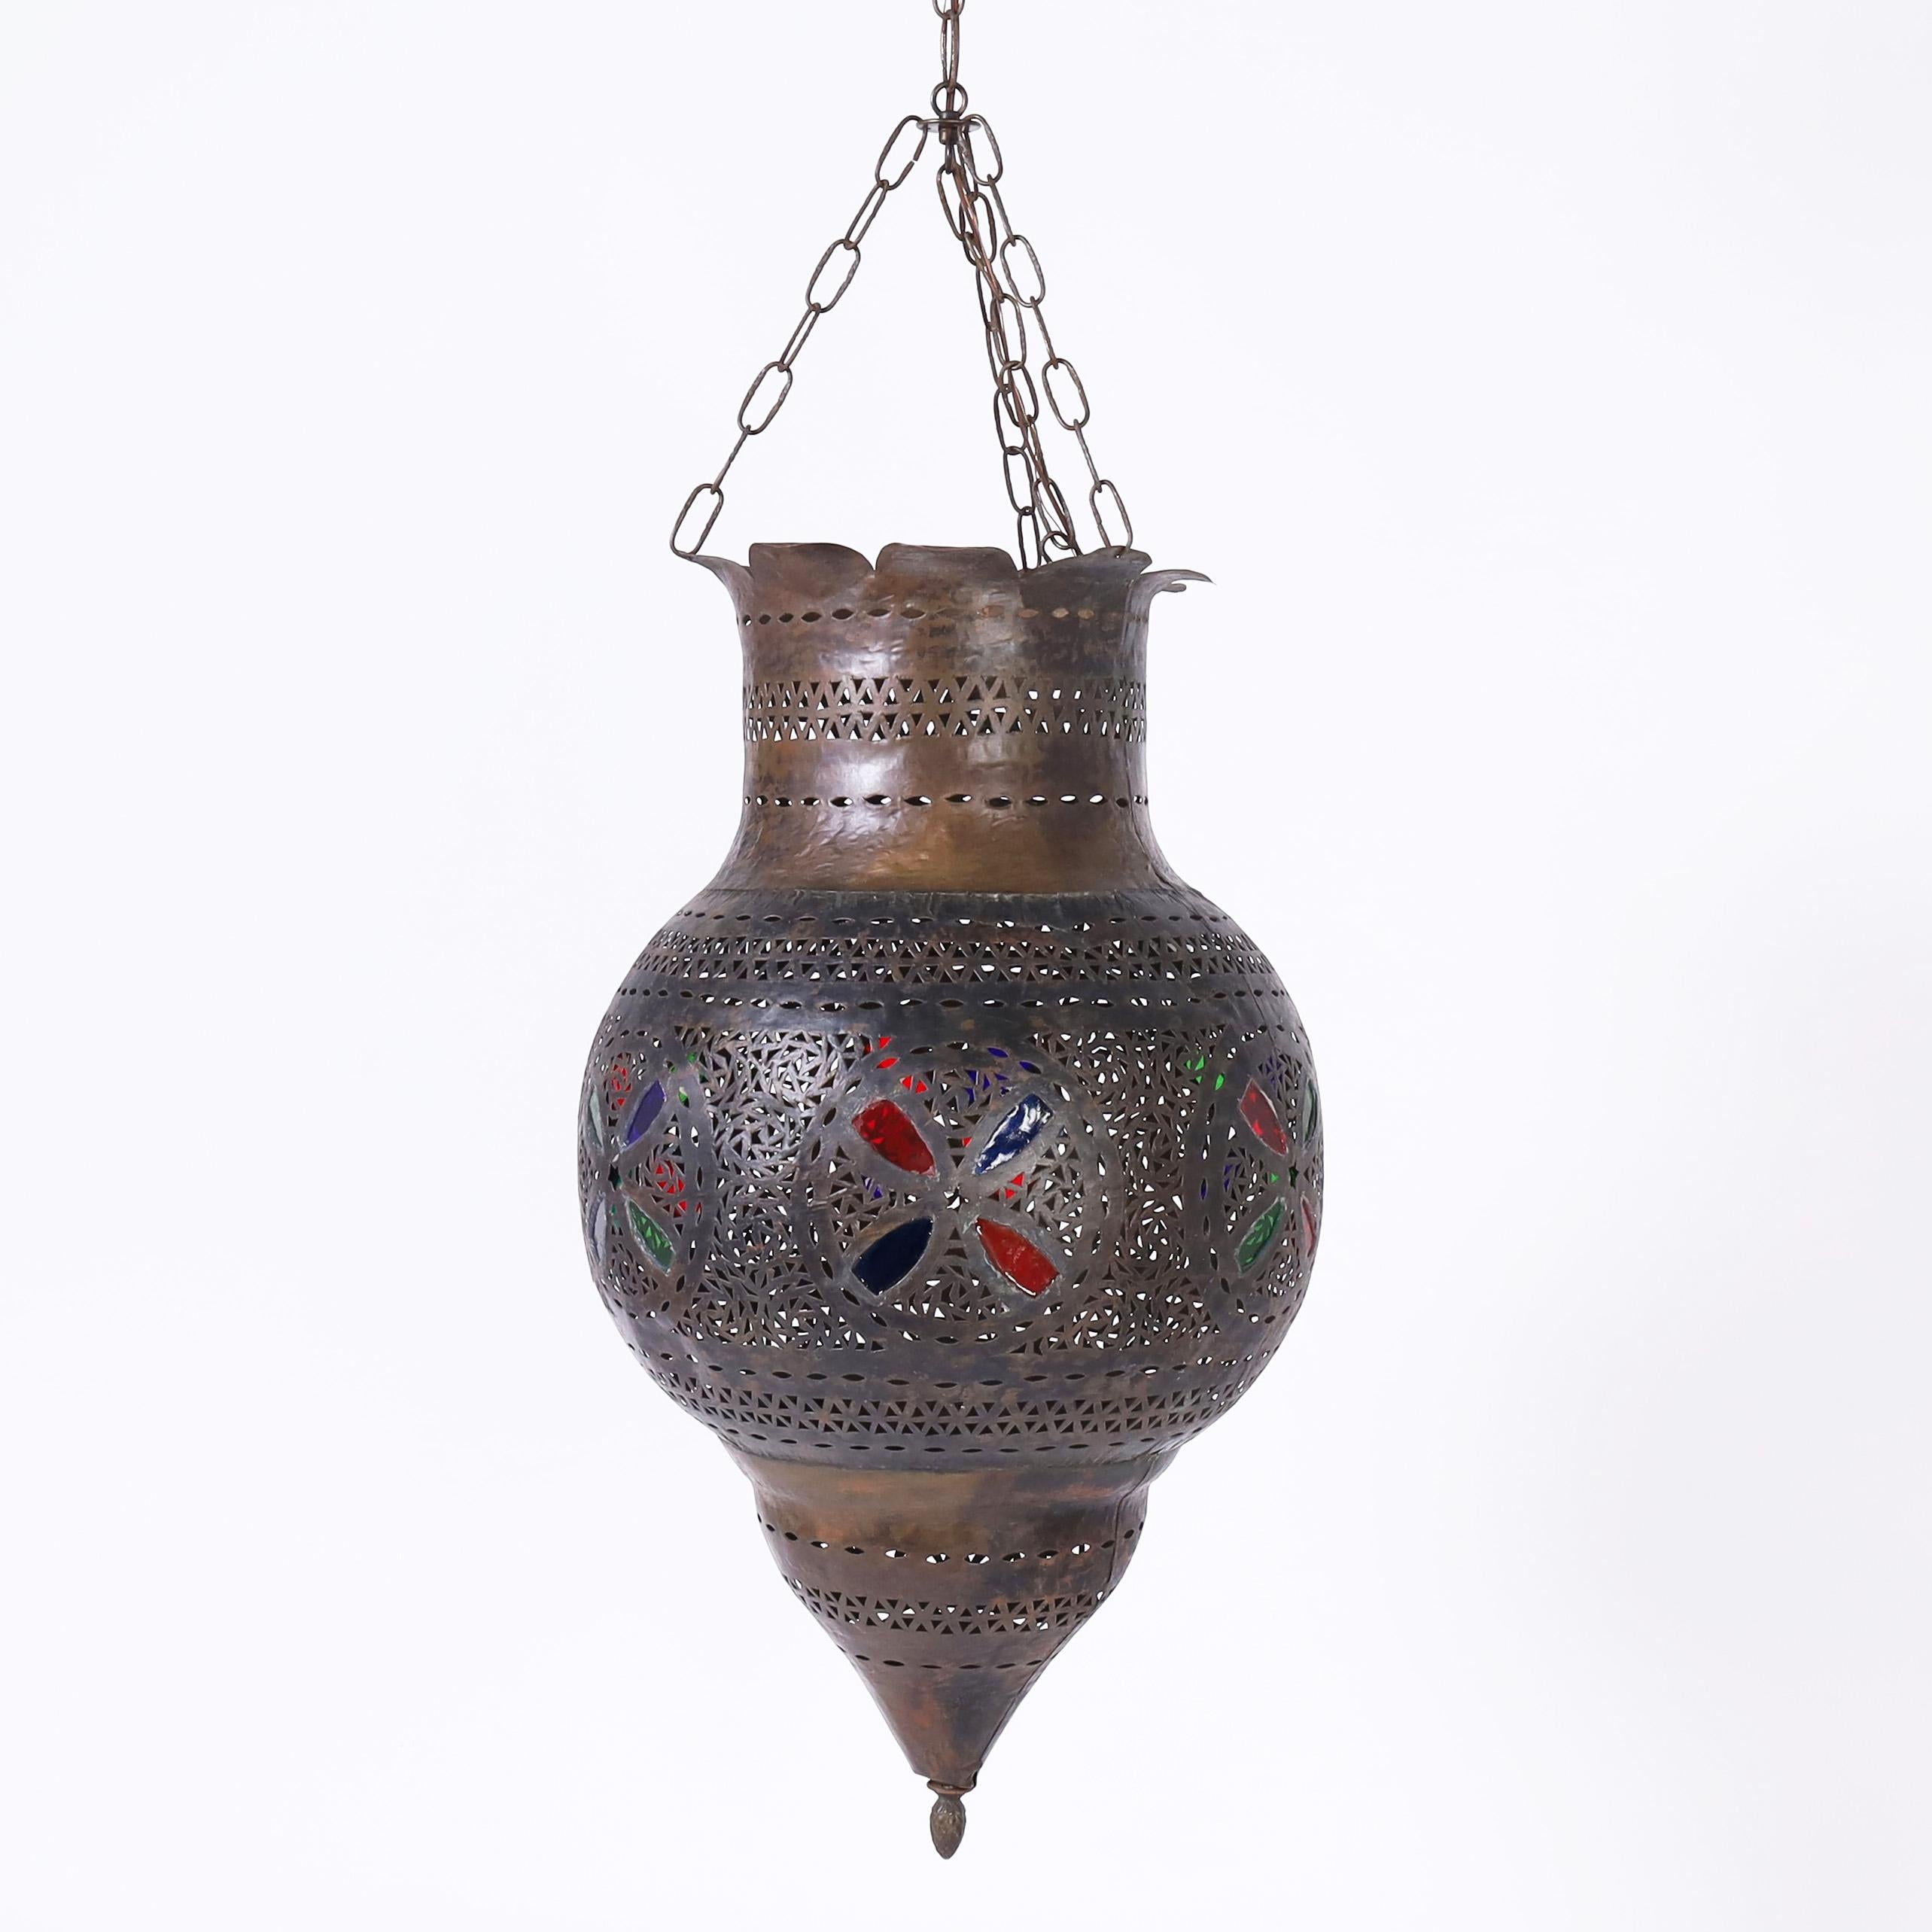 Charmante suspension marocaine antique, fabriquée à la main en laiton perforé, de forme classique, avec des motifs floraux en vitrail.